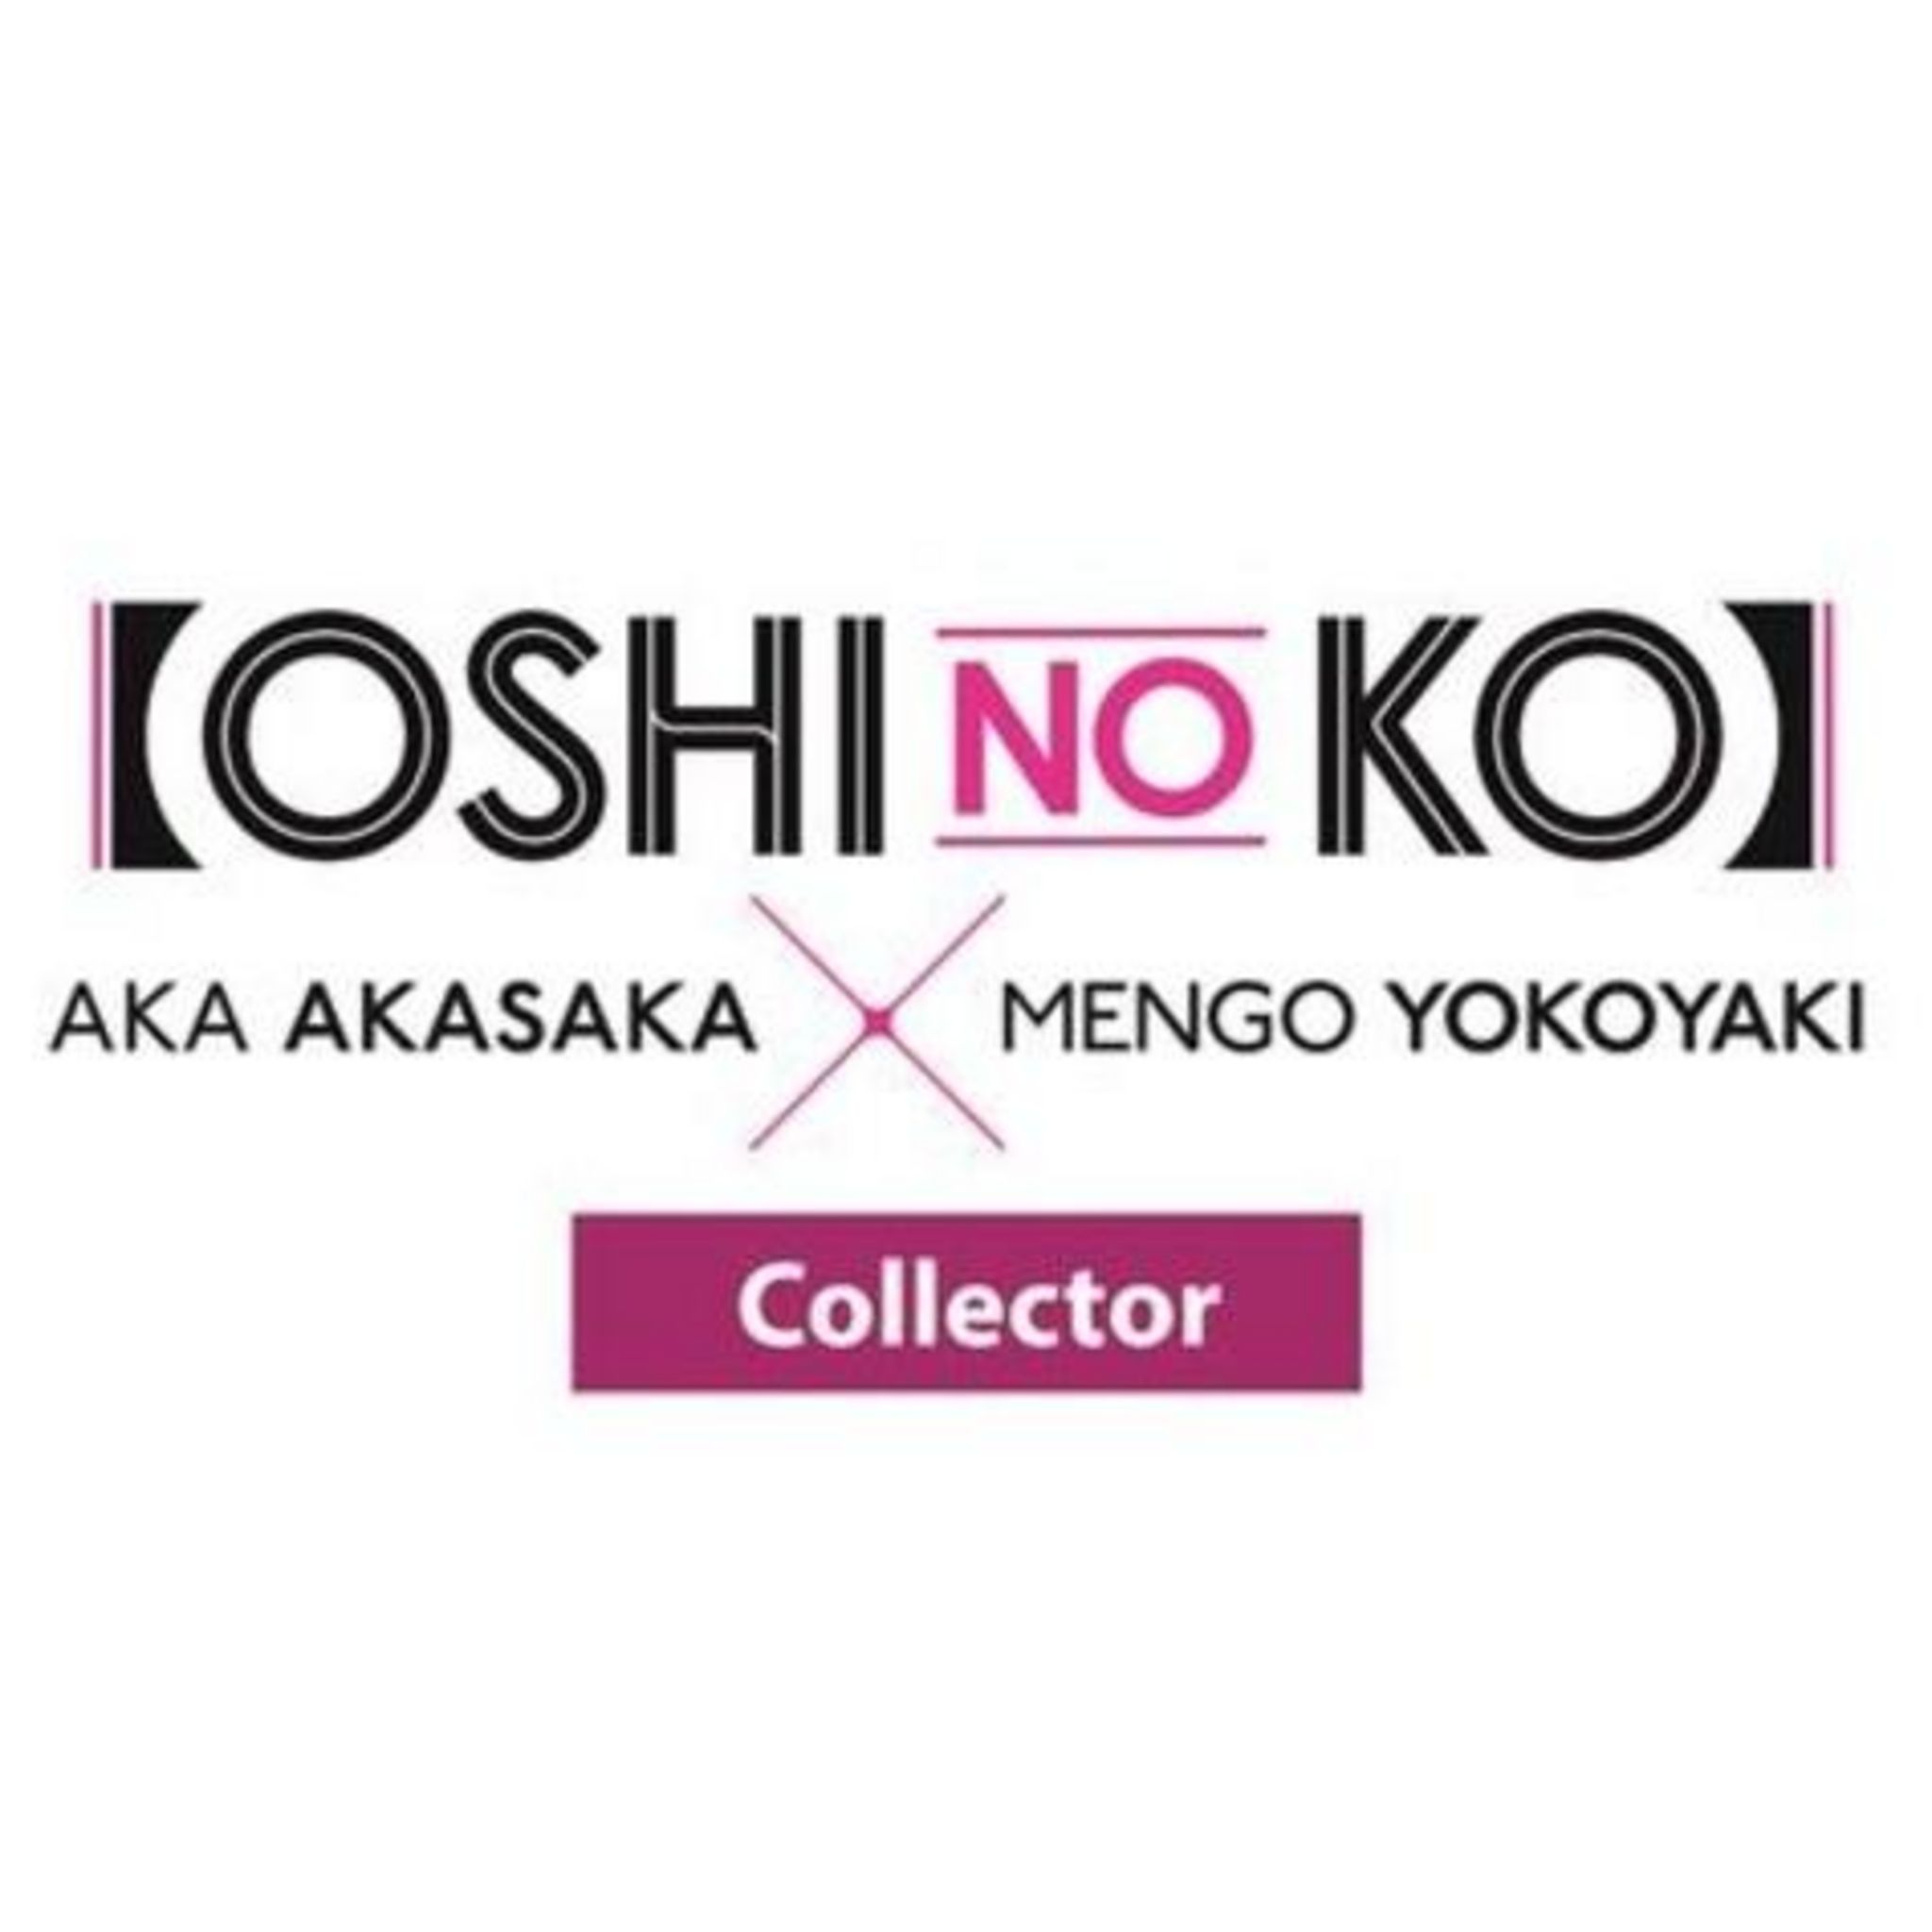 Oshi no ko - Tome 6 by Akasaka, Aka